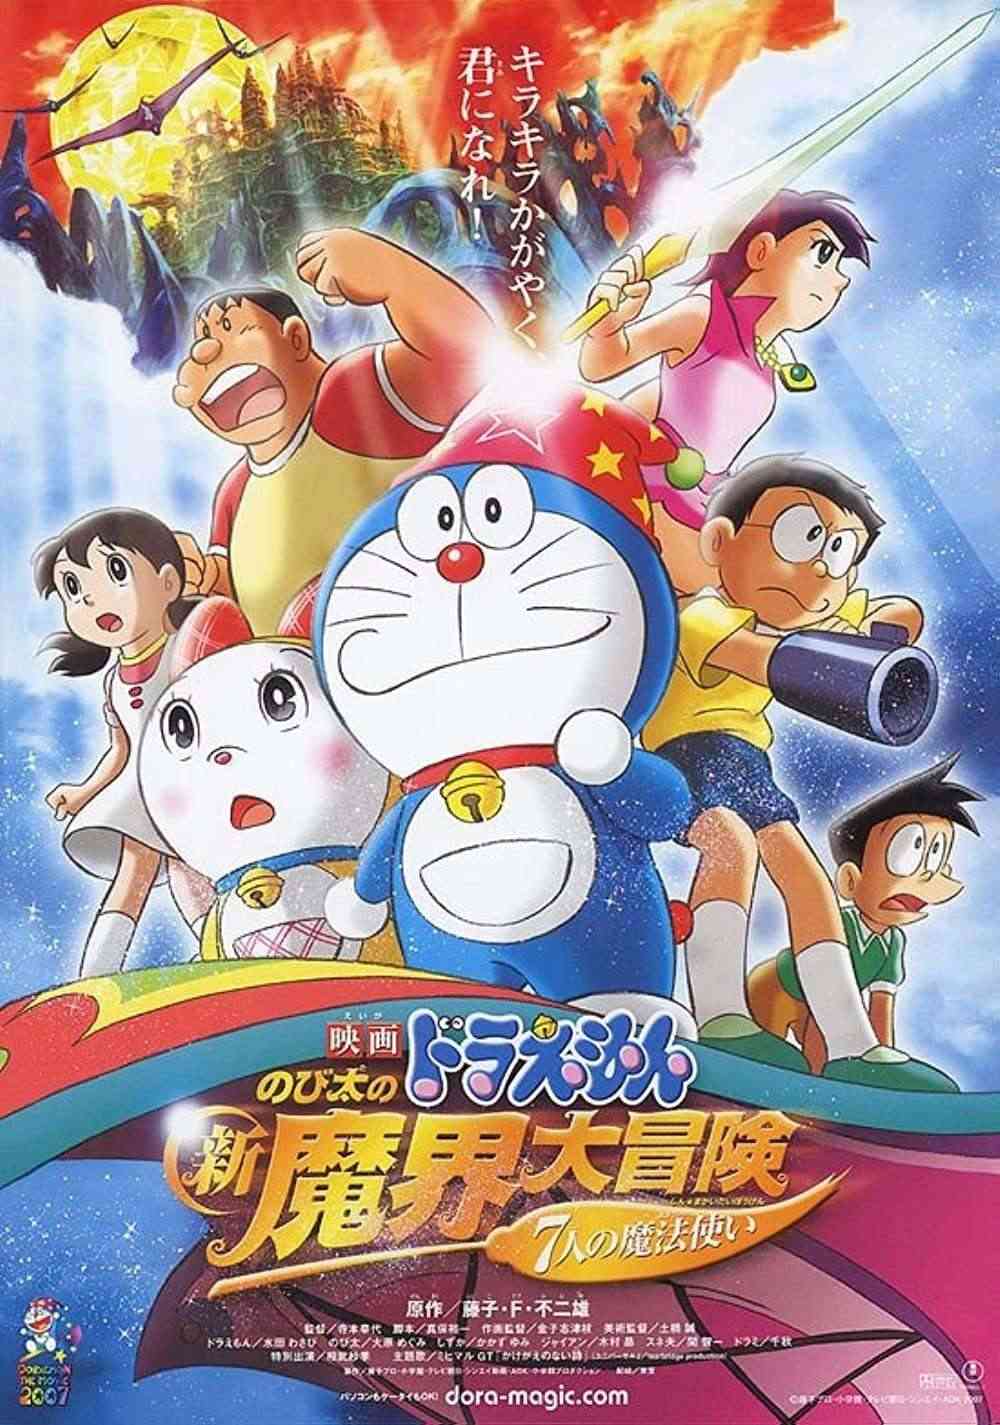 Đâu là movie Doraemon có cốt truyện tăm tối nhất trong cả series?